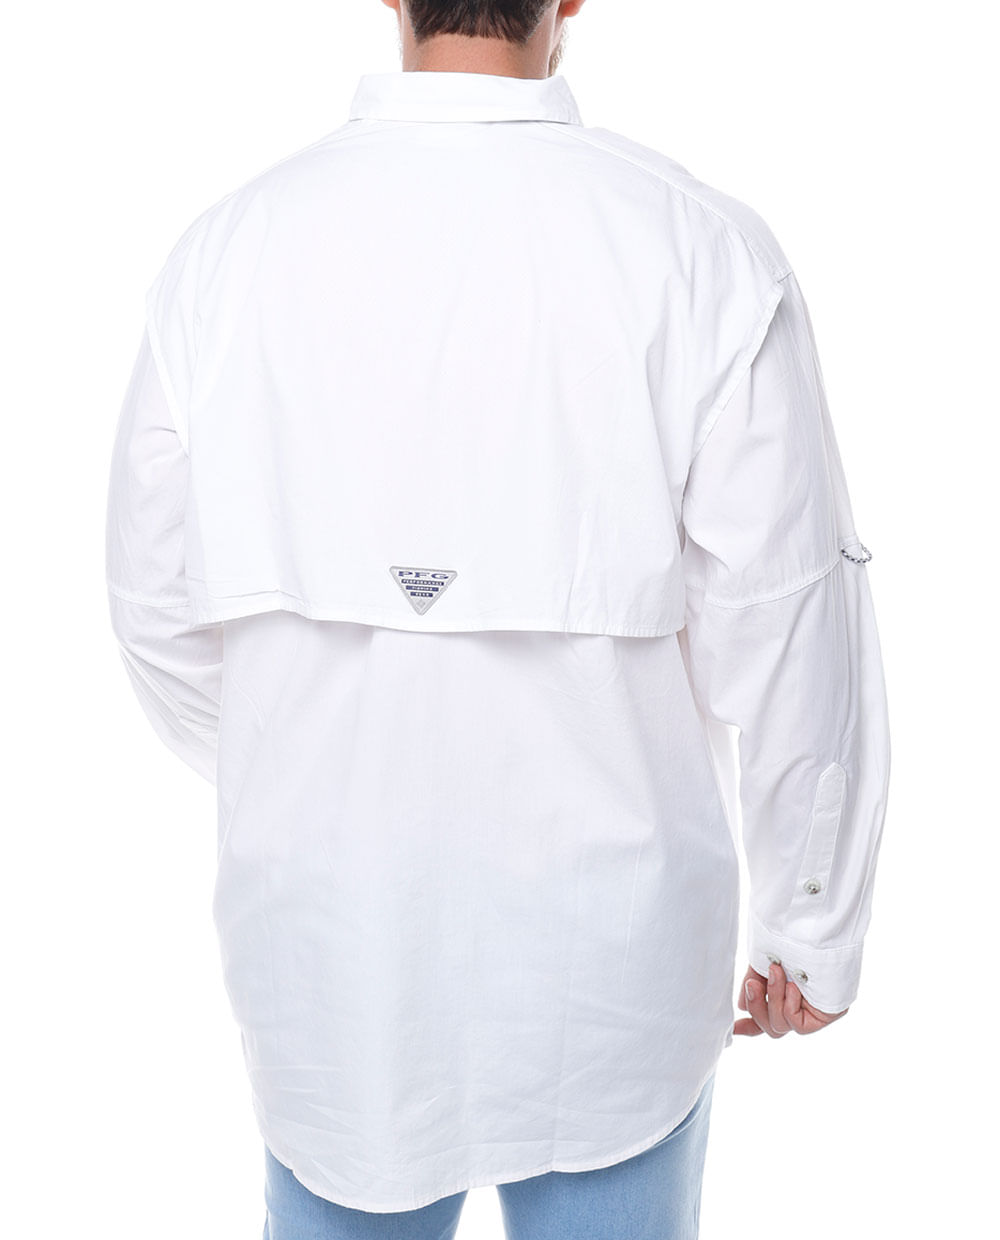 Camisa Columbia PFG blanca para hombre - Siman El Salvador